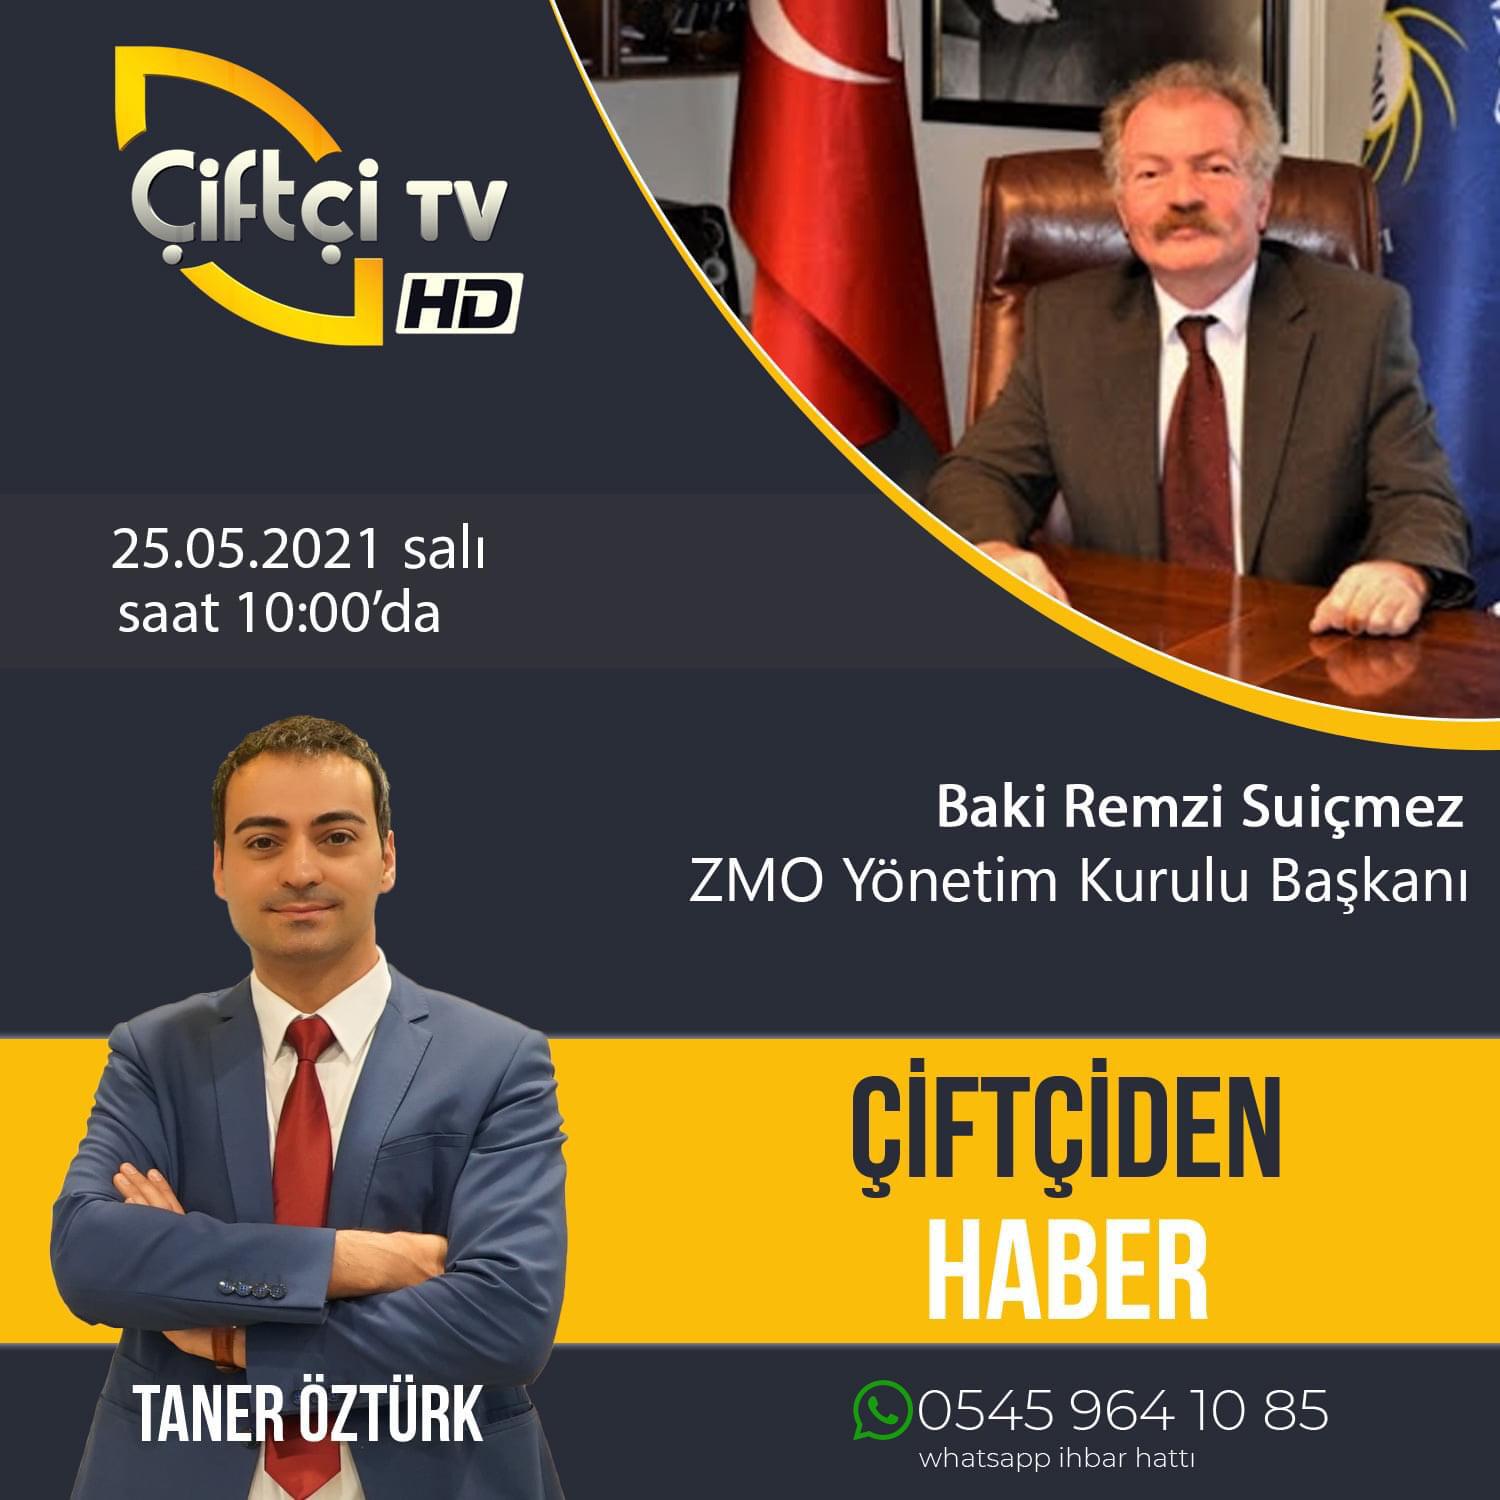 ÇİFTÇİ TV-"ÇİFTÇİDEN HABER" PROGRAMI